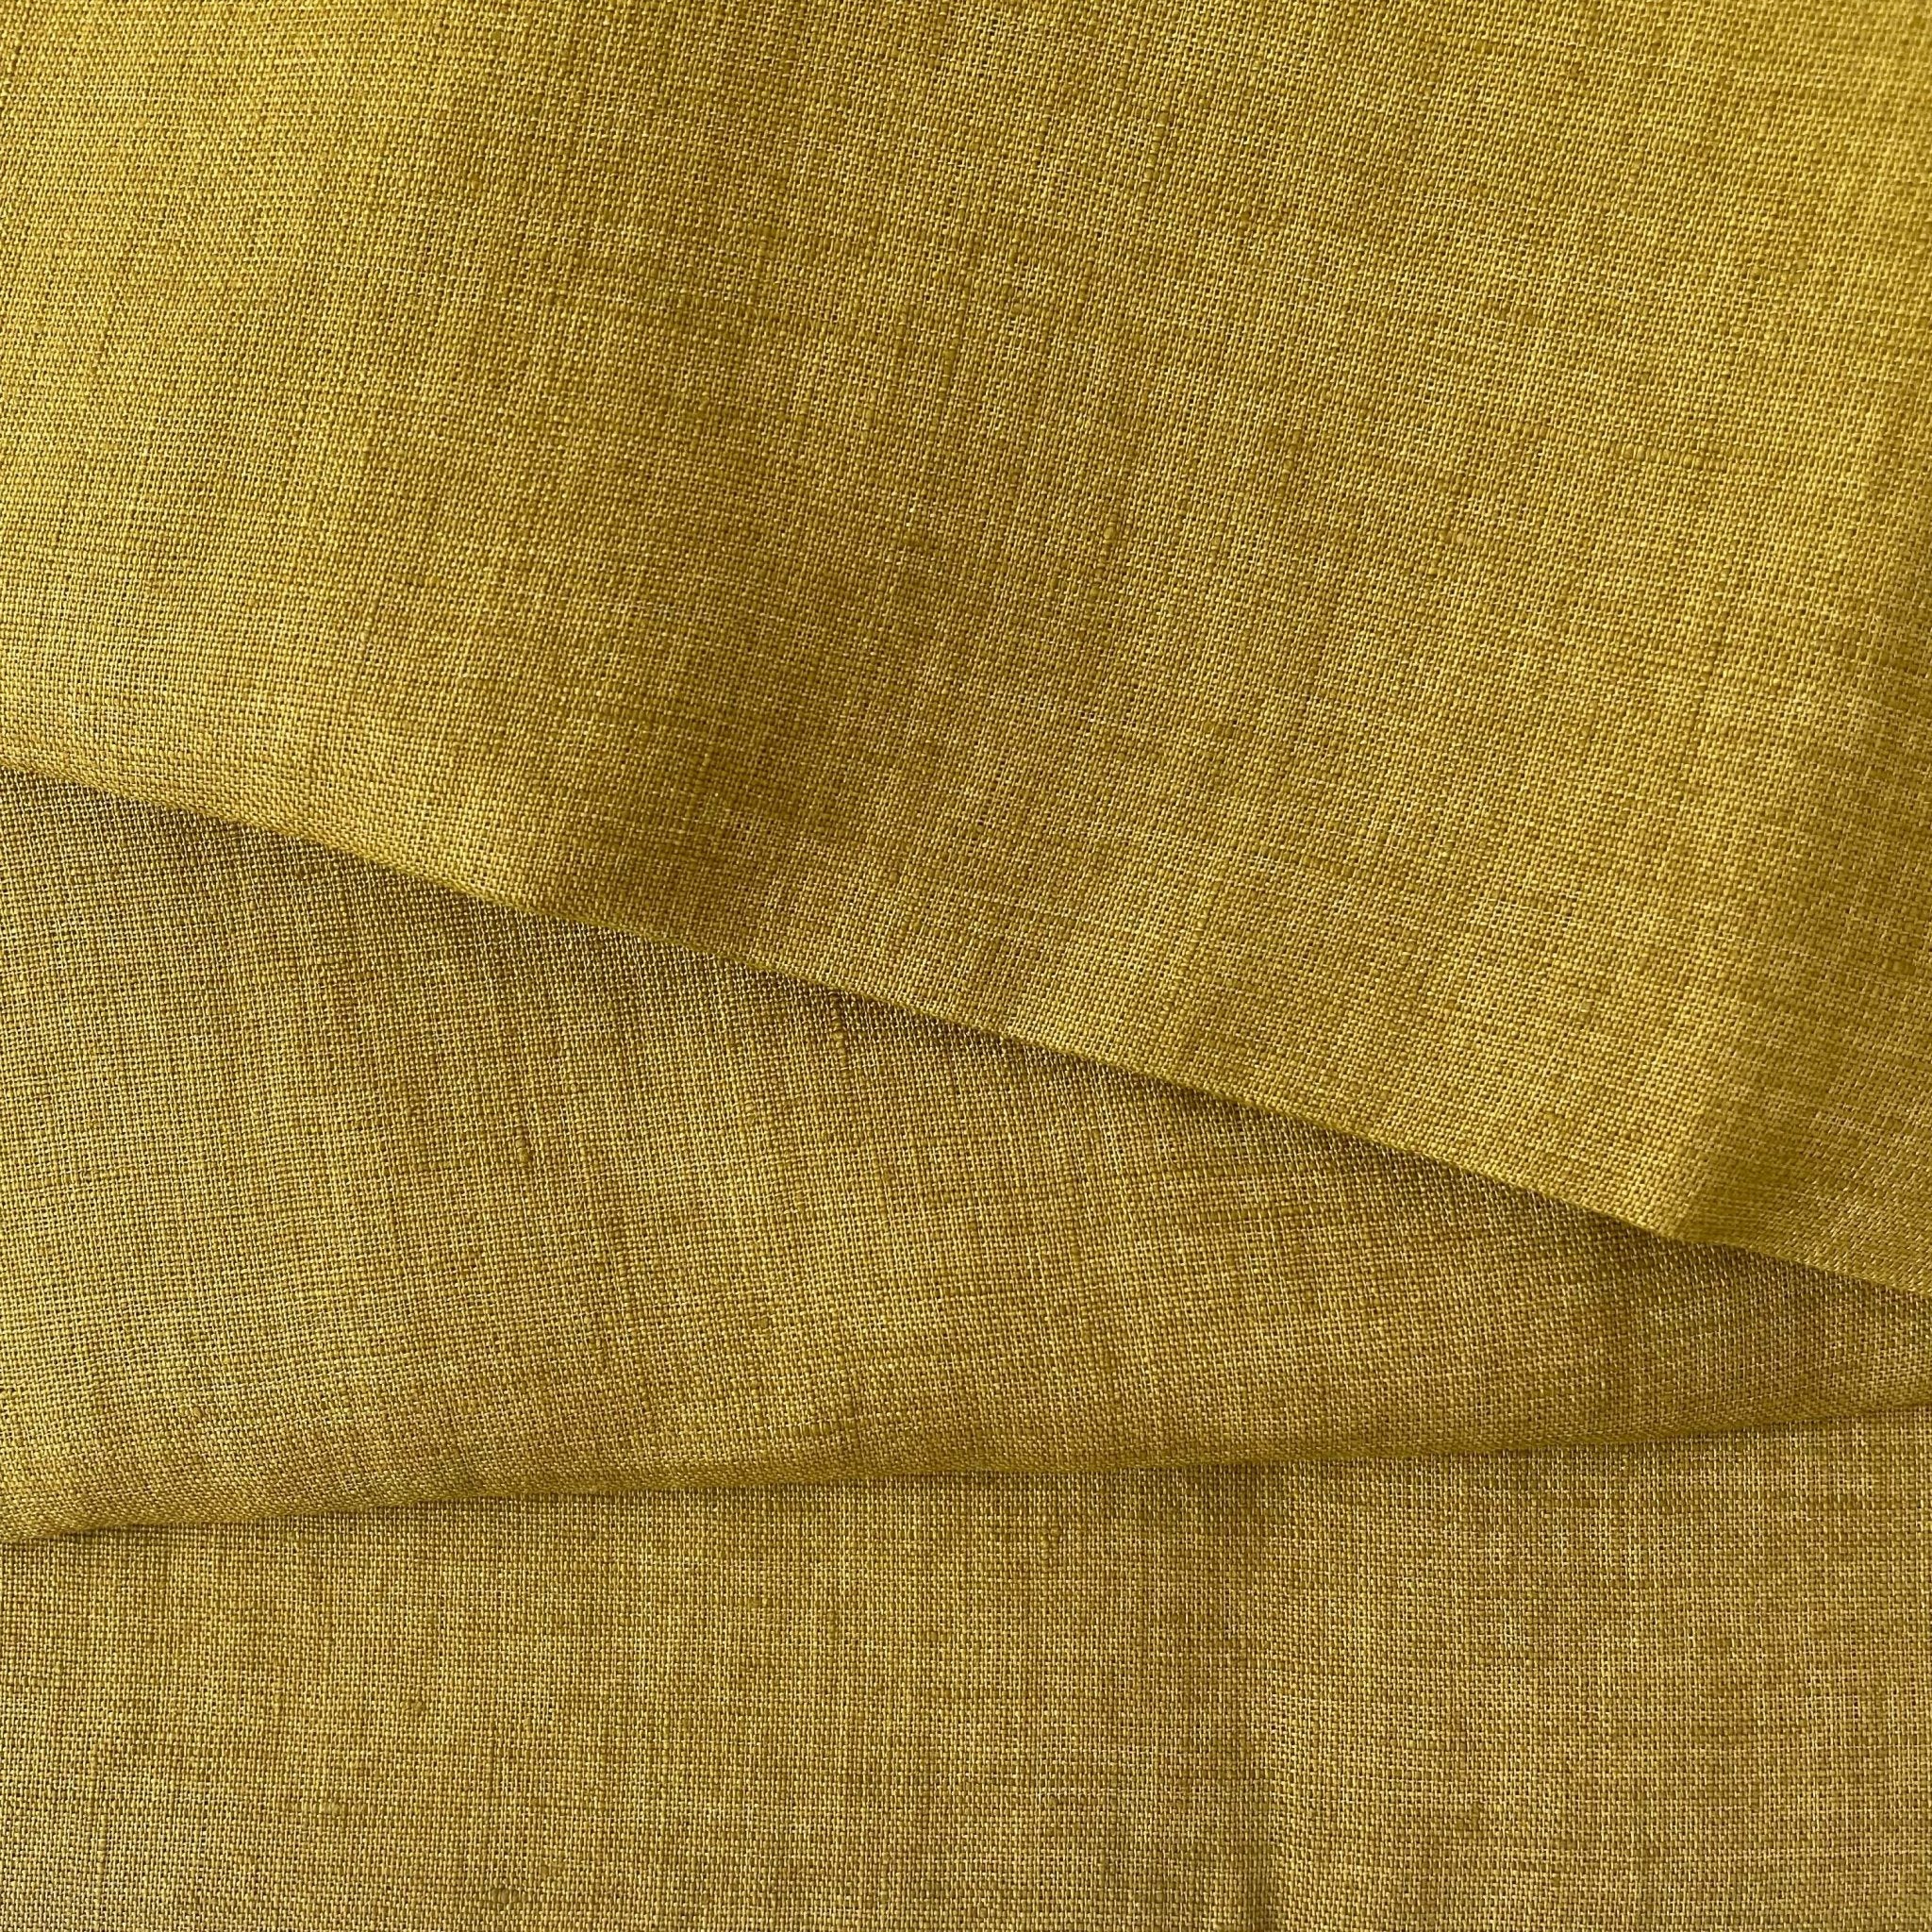 Linen Fabric Light Weight Soft Touch 21S 6132 7019 7018 6784 - The Linen Lab - Mustard